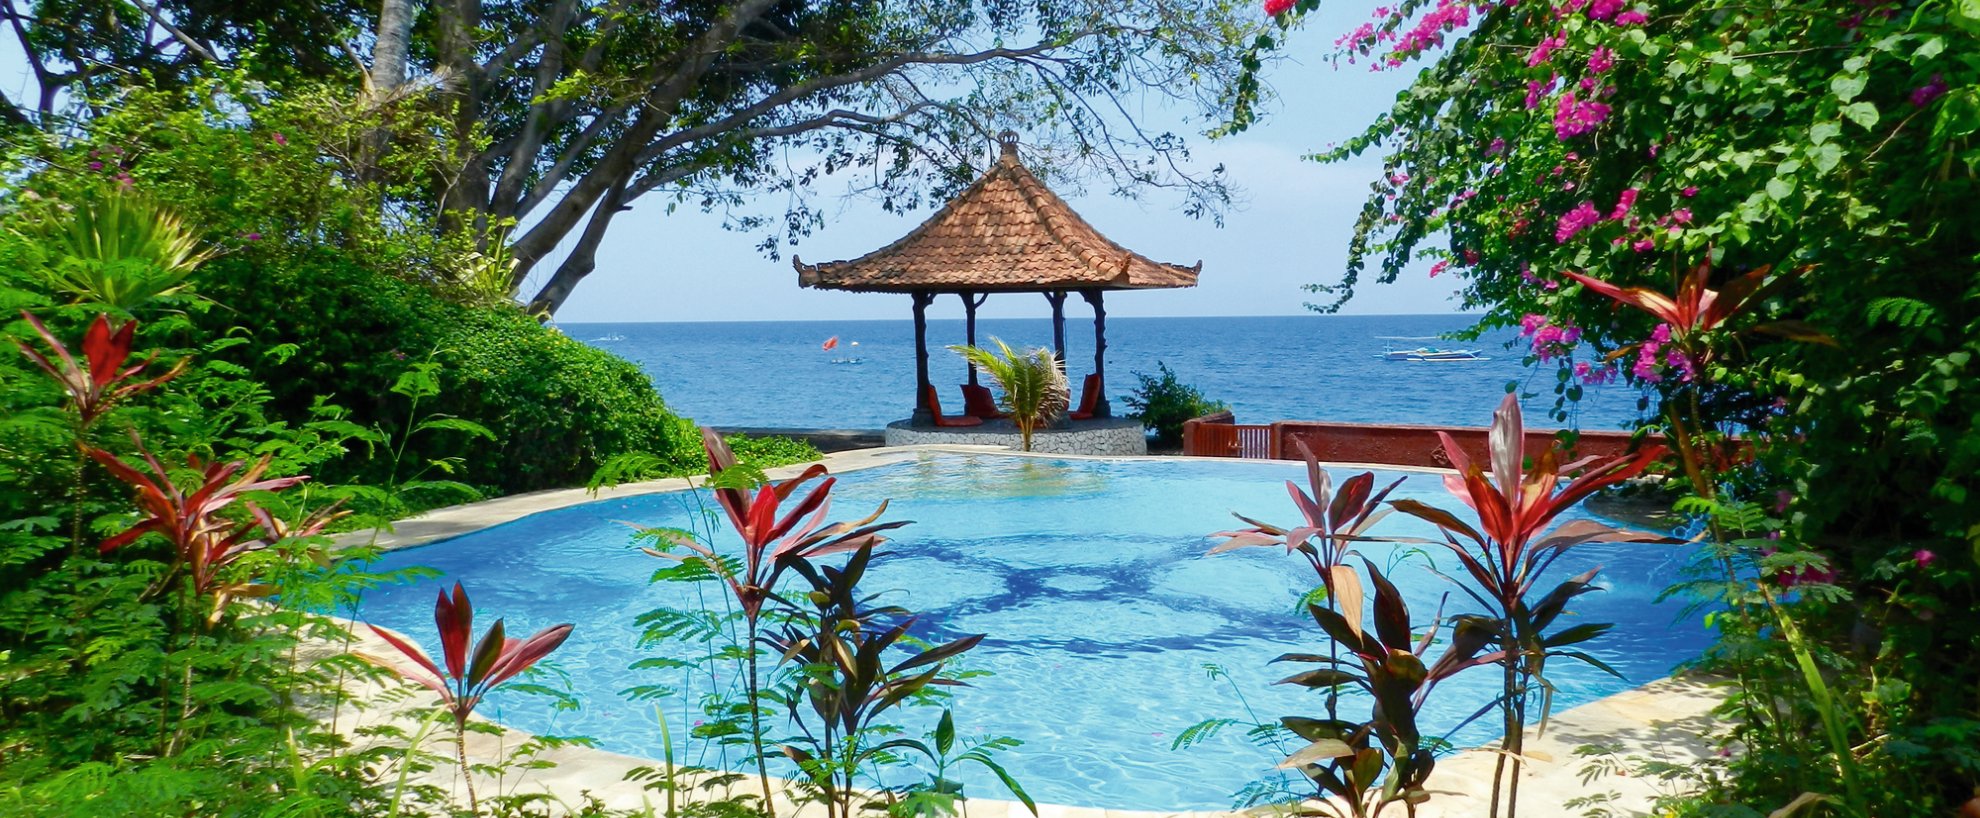 Indonesien Bali Bali Mandala Pool